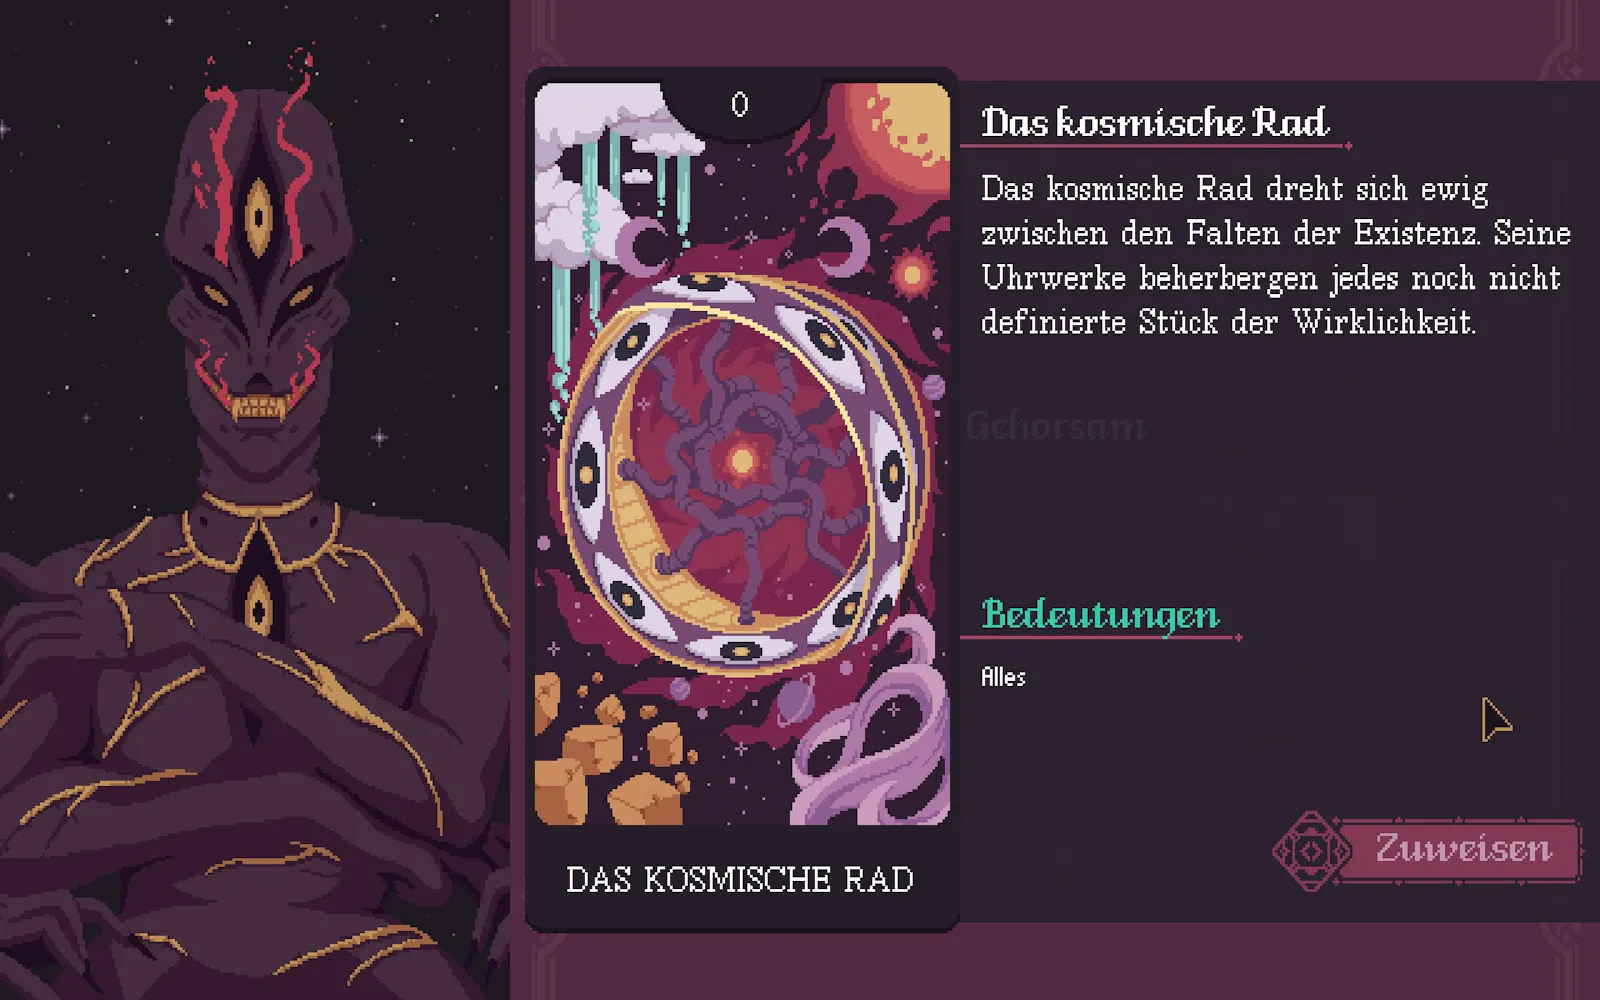 Screenshot: ein Alien-artiges Wesen, daneben eine Tarotkarte "Das kosmische Rad"